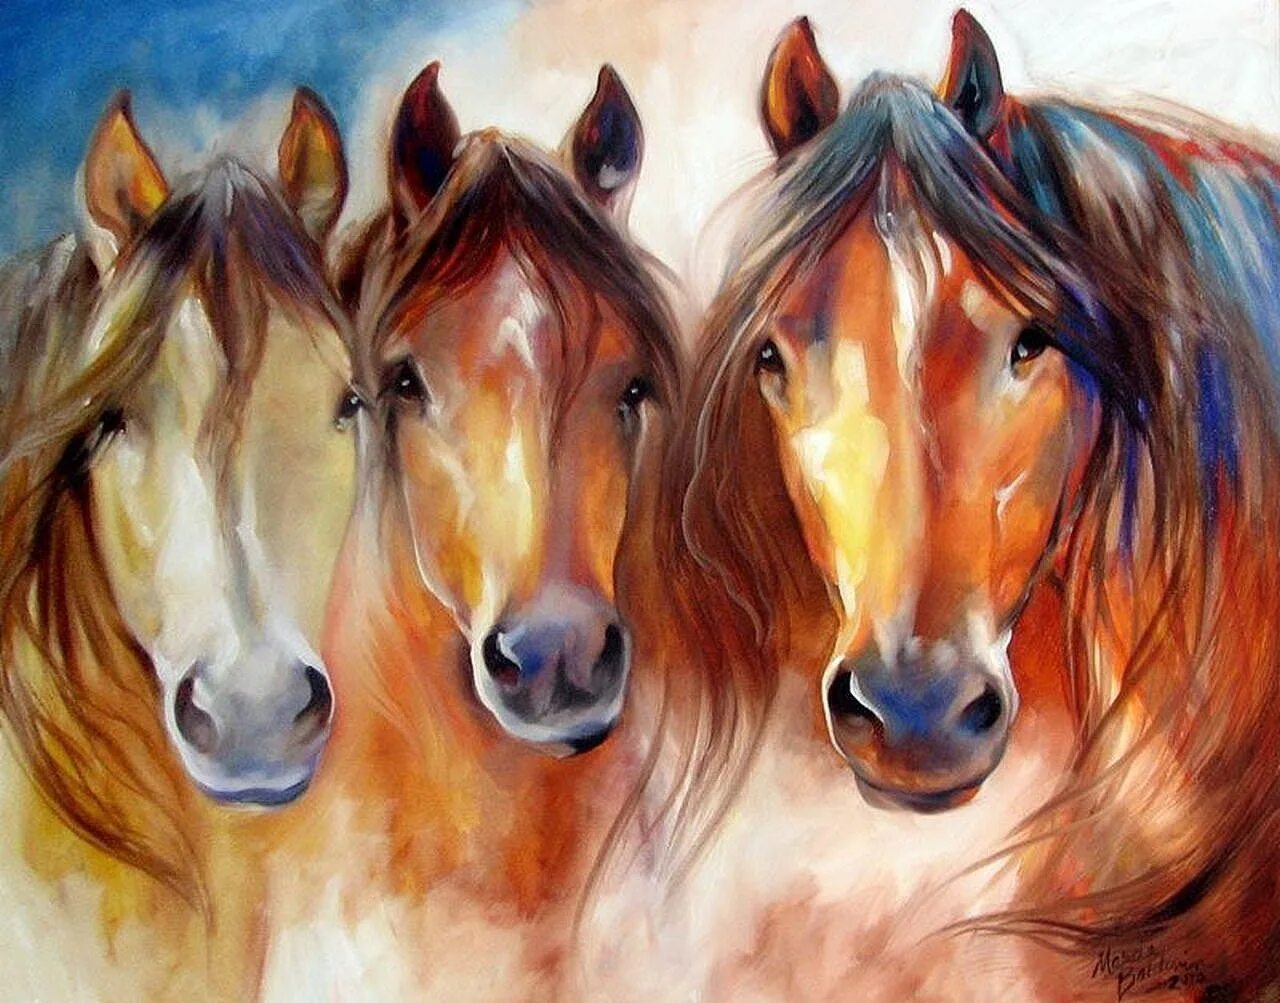 Марсия Болдуин. Лошади Марсии Болдуин. Marcia Baldwin картины лошади. Художник Марсия Болдуин.